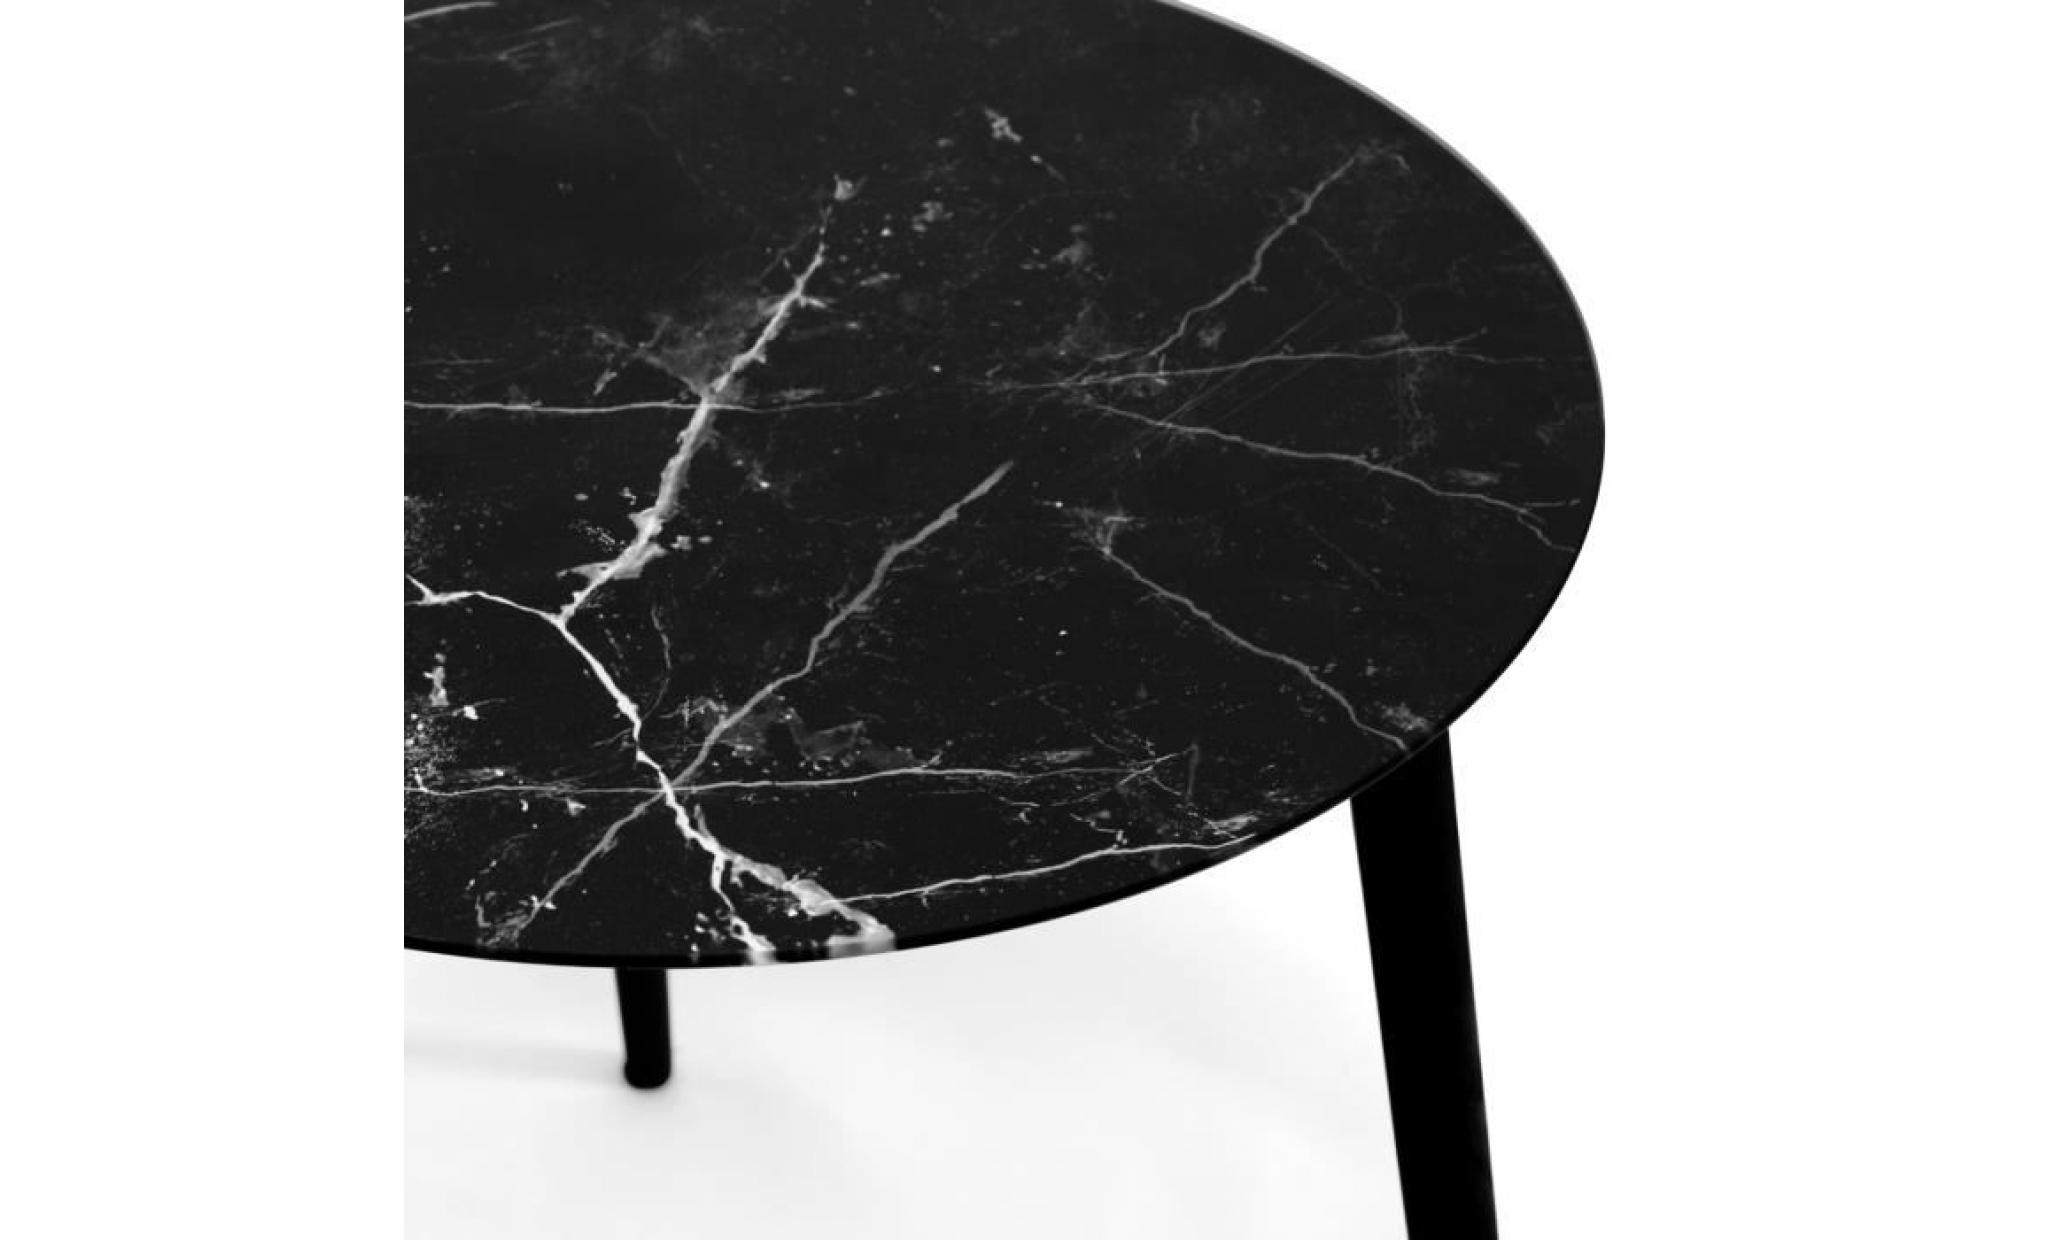 jonas   lot de 2 tables rondes scandinaves   (1 petite + 1 grande) tables basses en verre trempé effet marbre à 3 pieds (noire) pas cher